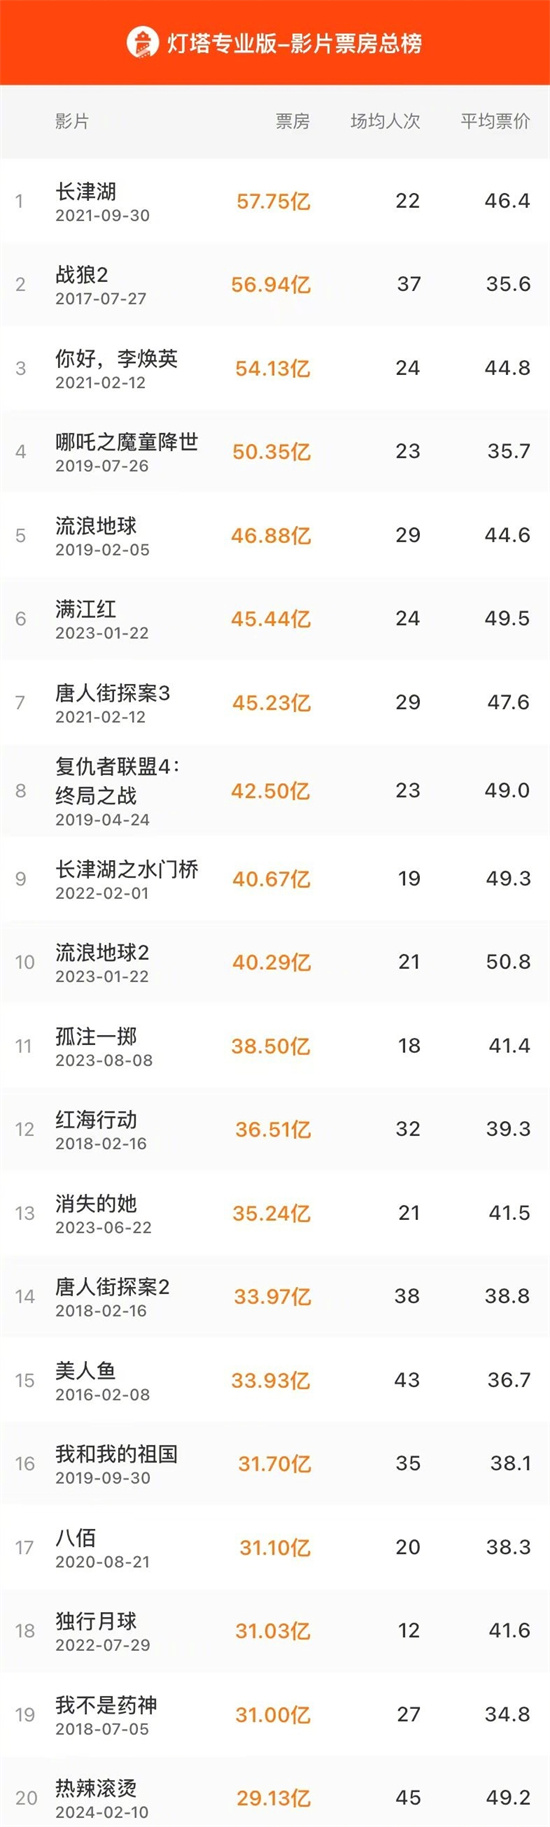 《热辣滚烫》票房超29亿 跻身中国影史票房TOP20